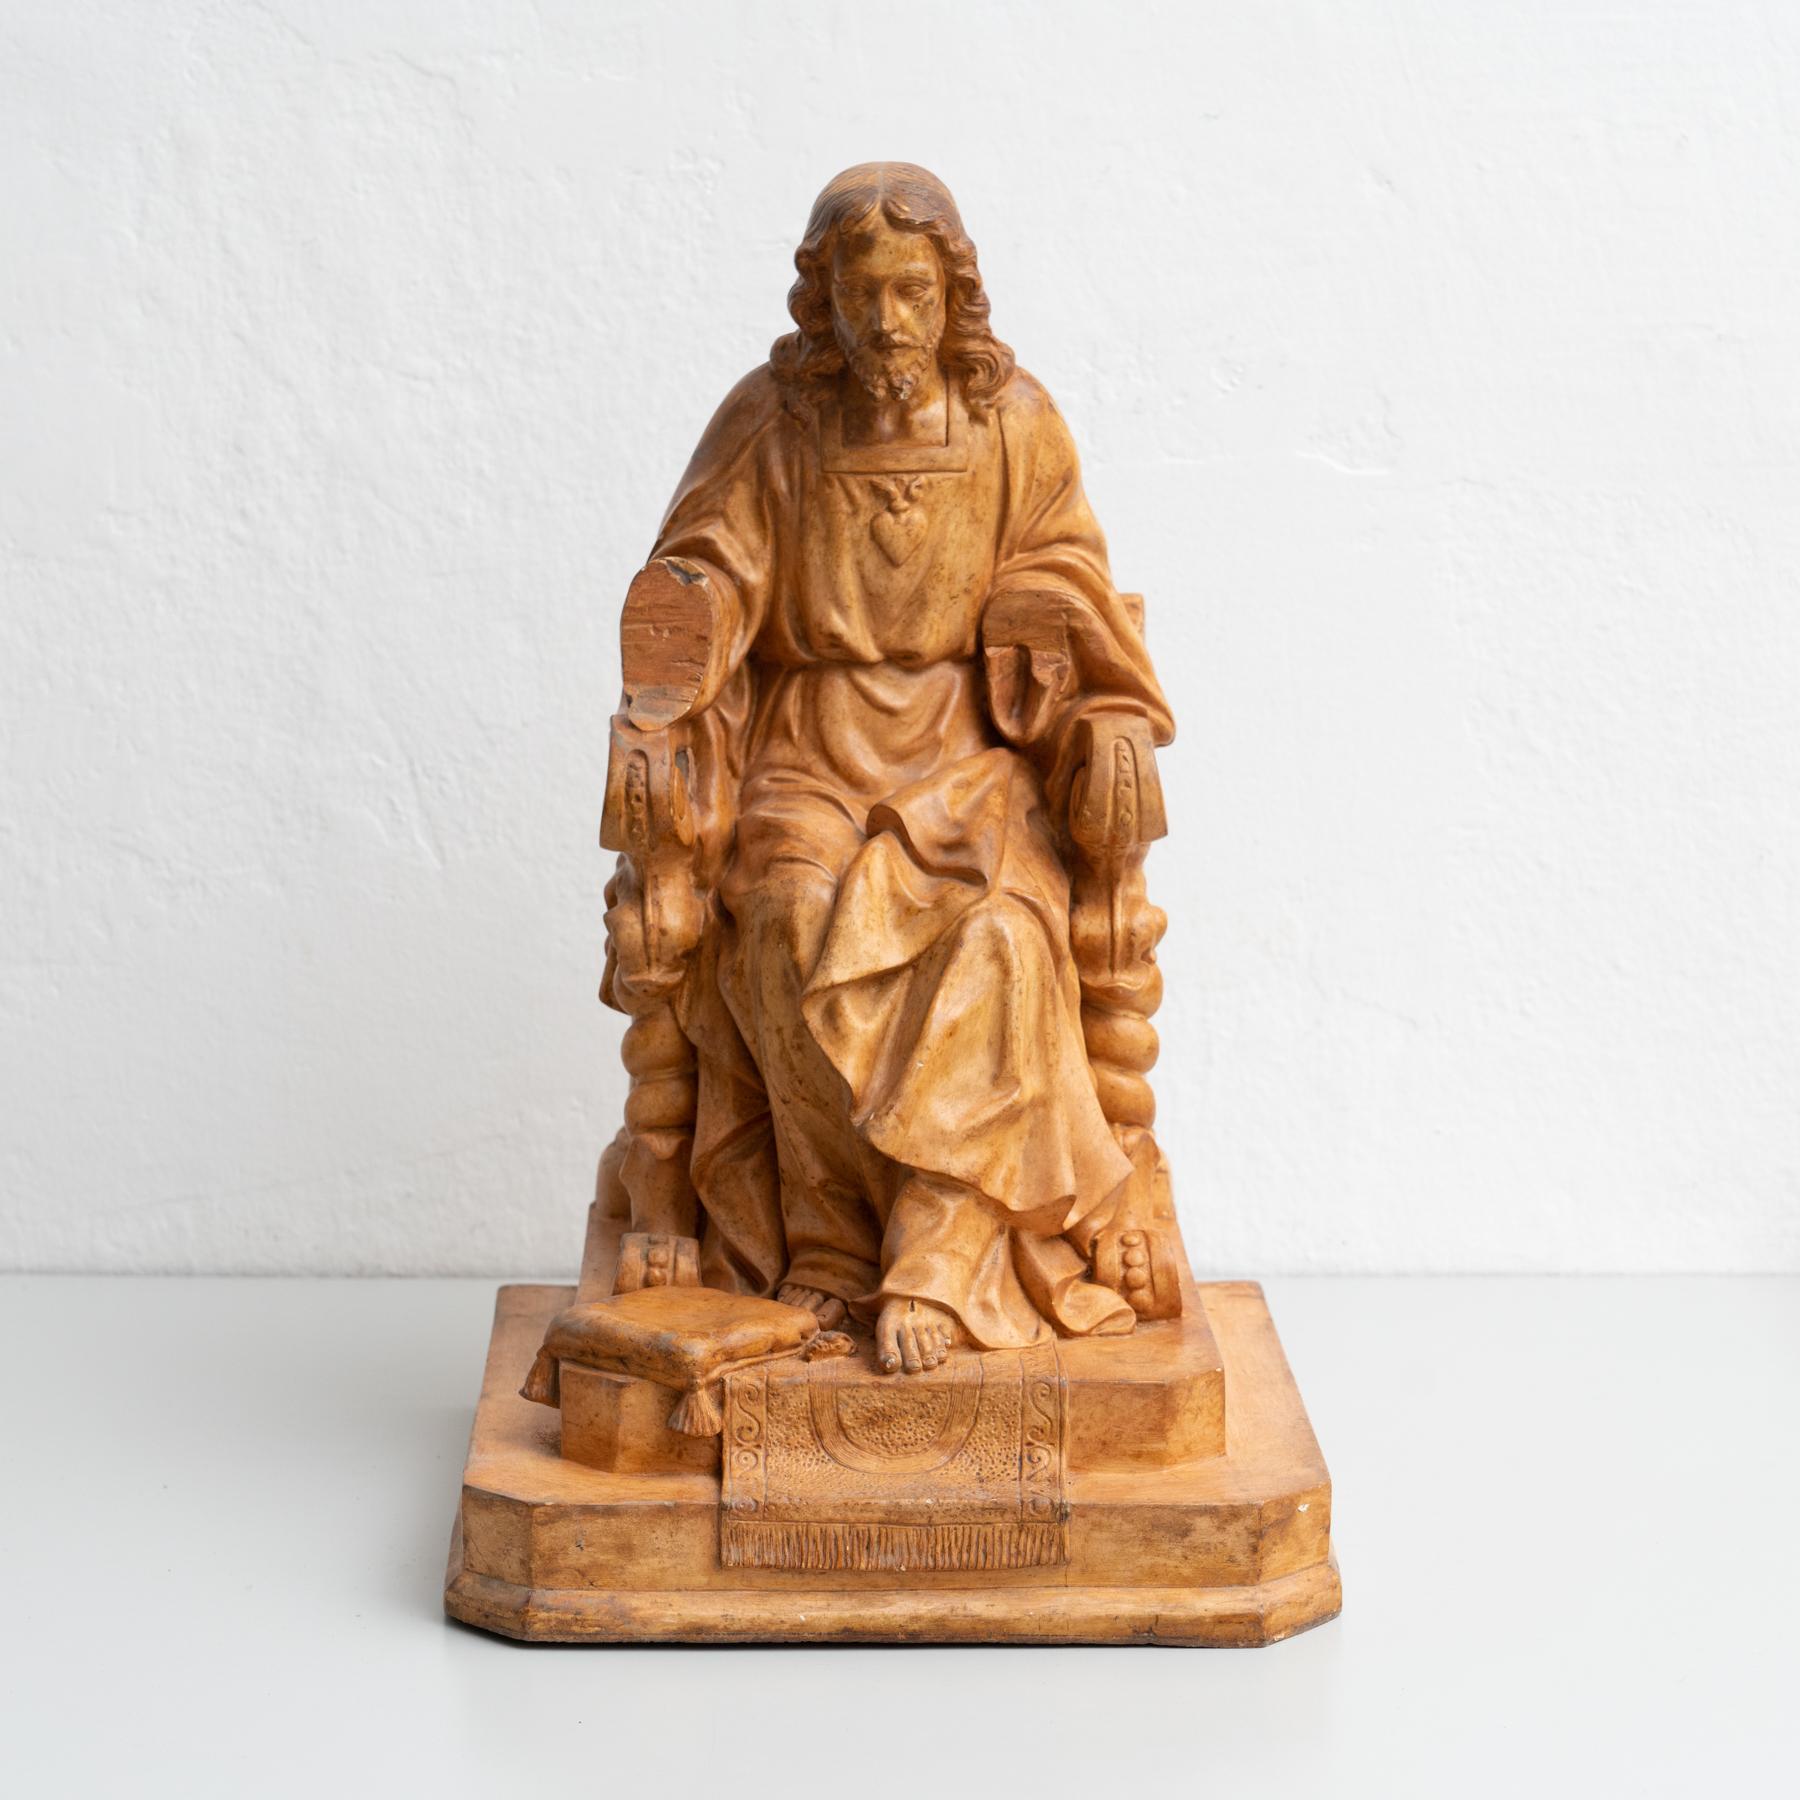 Figurine de Jésus-Christ tournée vers le milieu du 20e siècle en plâtre.

Fabriqué à Olot, Espagne.

En état d'origine, avec une usure mineure conforme à l'âge et à l'utilisation, préservant une belle patine.
 